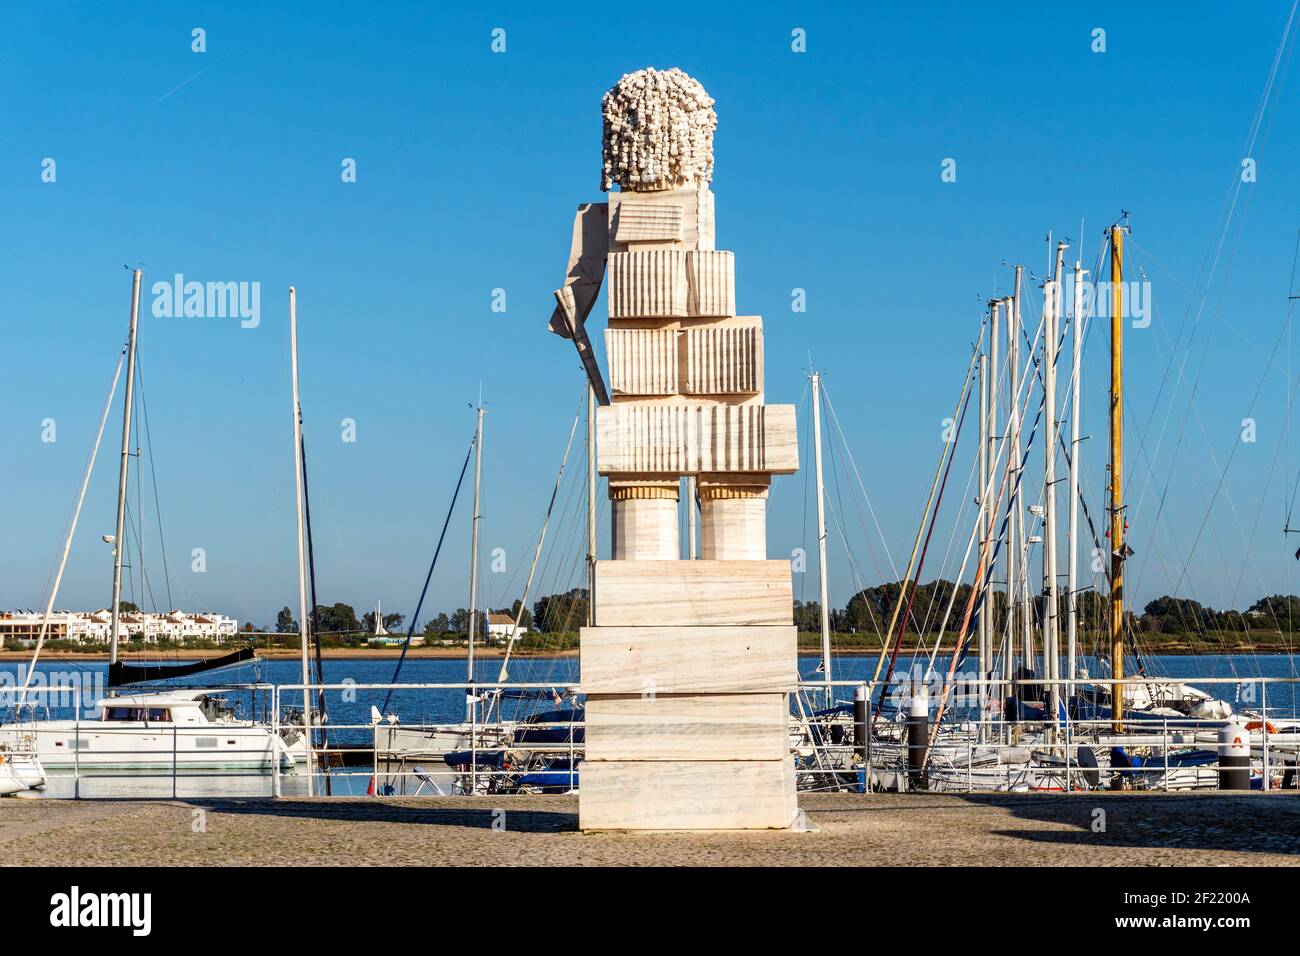 Statue de Marquis de Pombal située dans le port de plaisance de Vila Real de Santo Antonio, Algarve, Portugal Banque D'Images